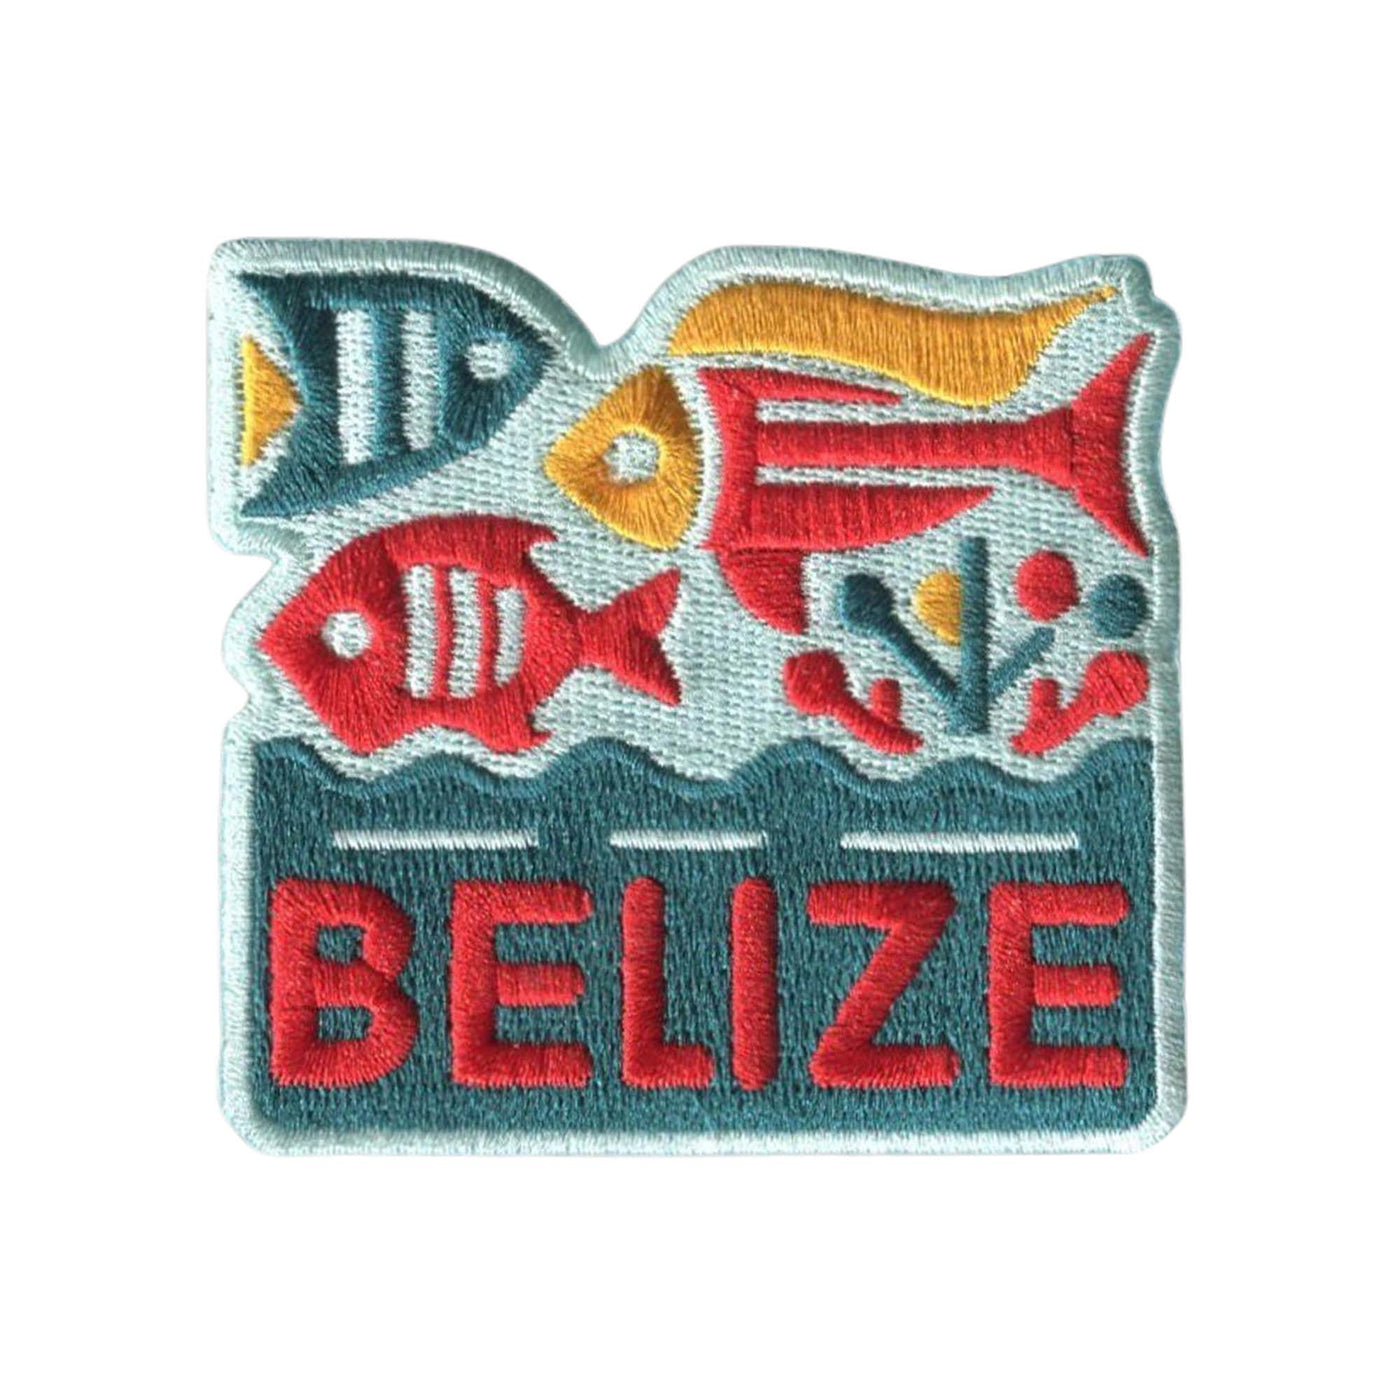 Belize Hook Patch